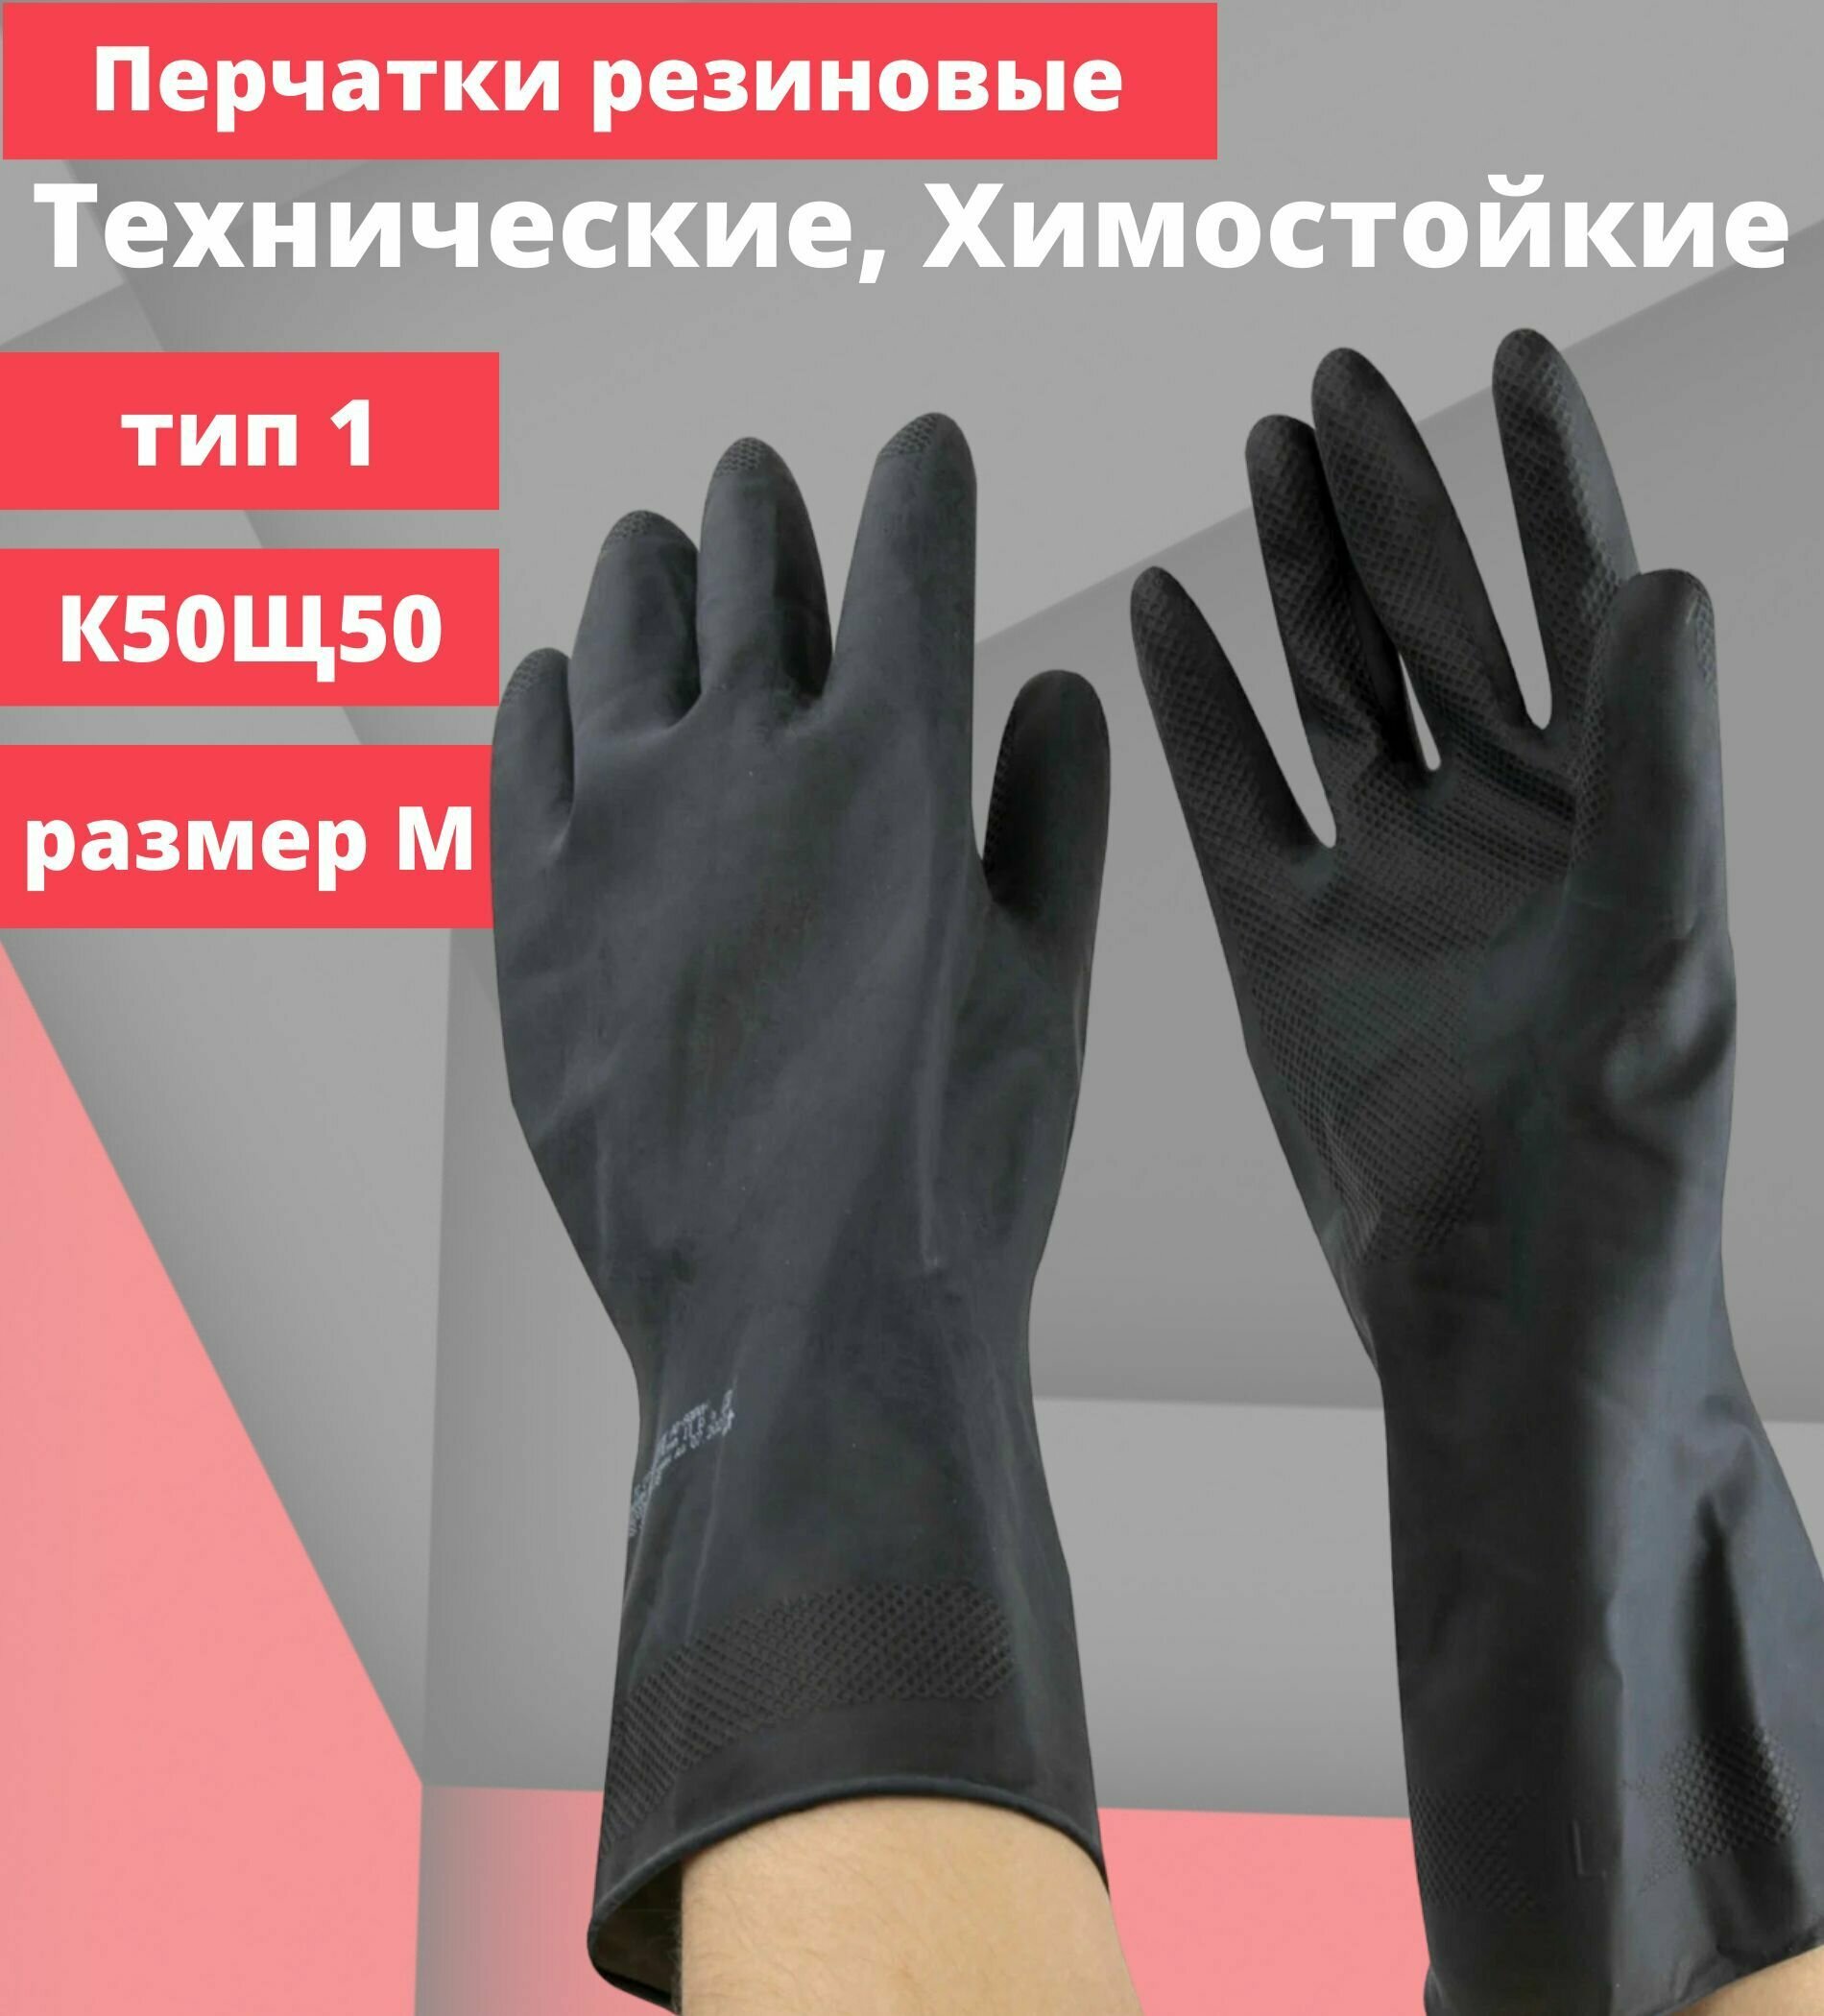 Перчатки защитные резиновые, латекс, химостойкие азрихим, КЩС тип 1, К50Щ50, кислощелочестойкие